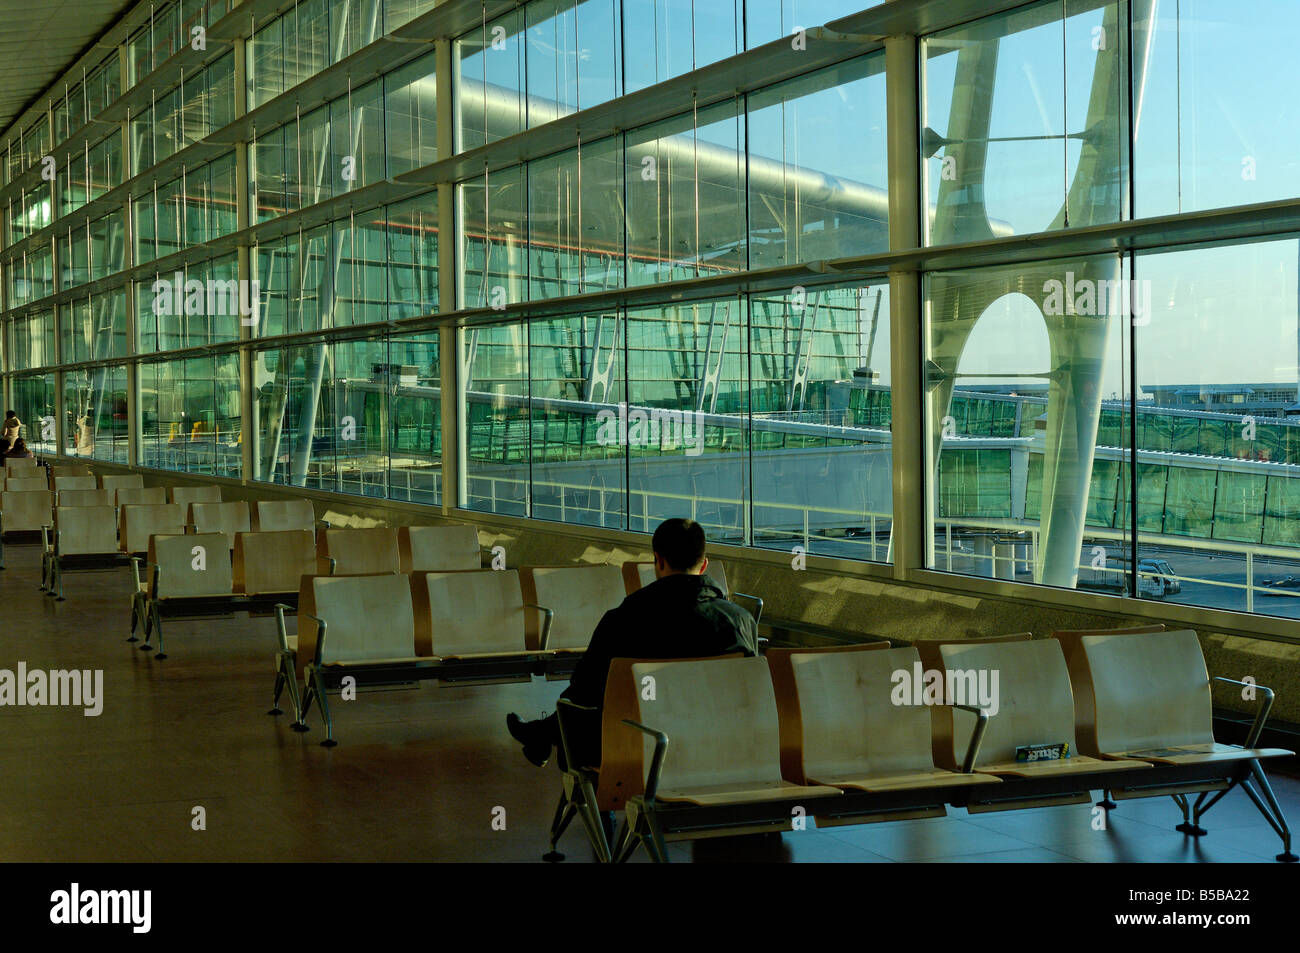 Aeroporto porto immagini e fotografie stock ad alta risoluzione - Alamy